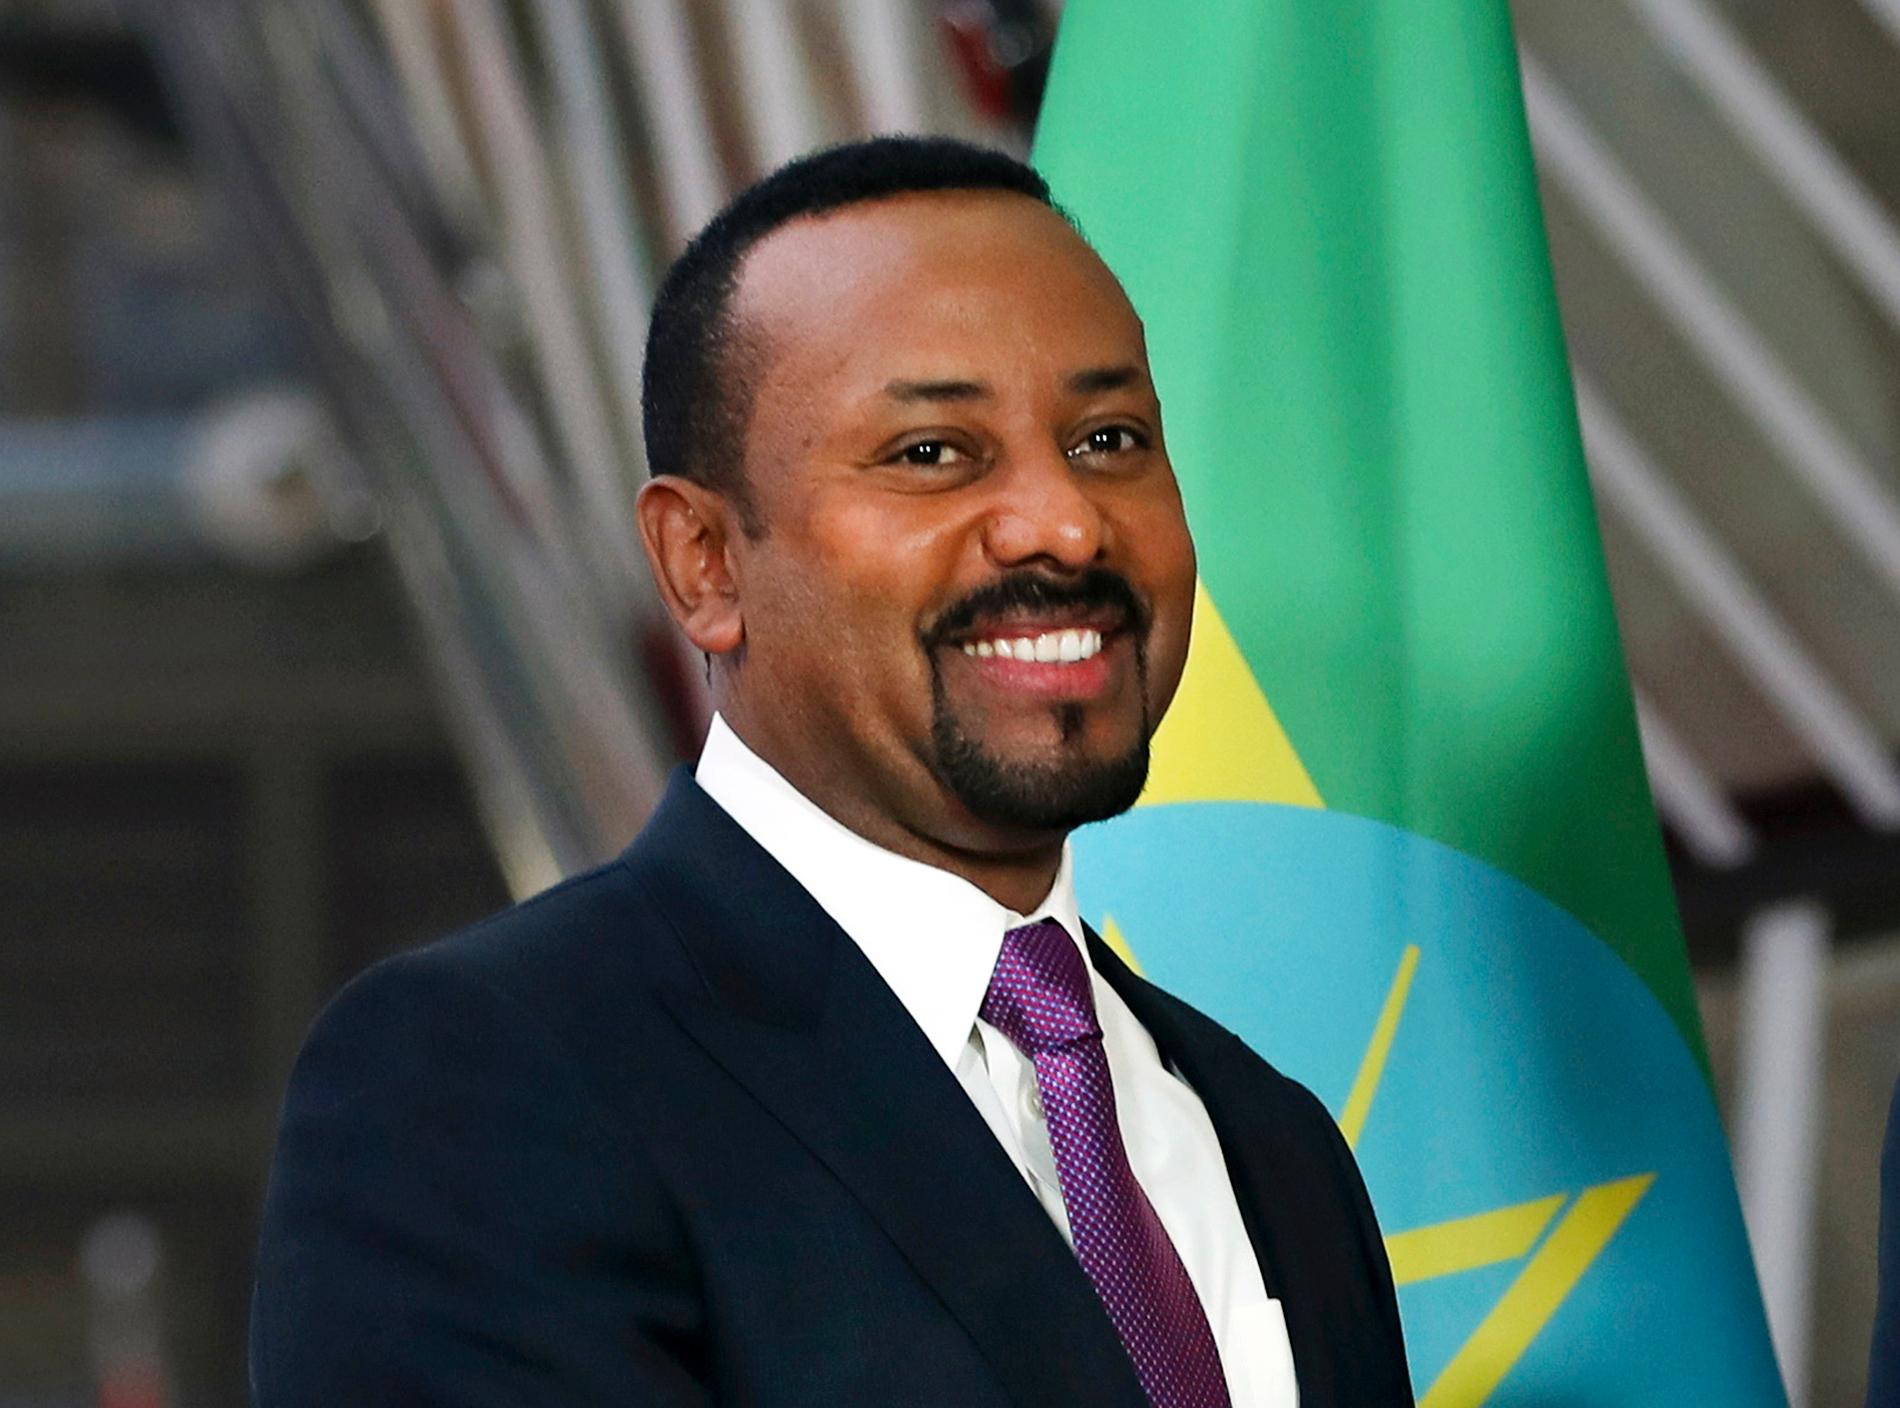 Etiopiens premiärminister Abiy Ahmed ingår i spekulationerna inför årets fredspris, bland annat på grund av de senaste årens uppmjukning av relationerna till grannlandet Eritrea. Arkivfoto.